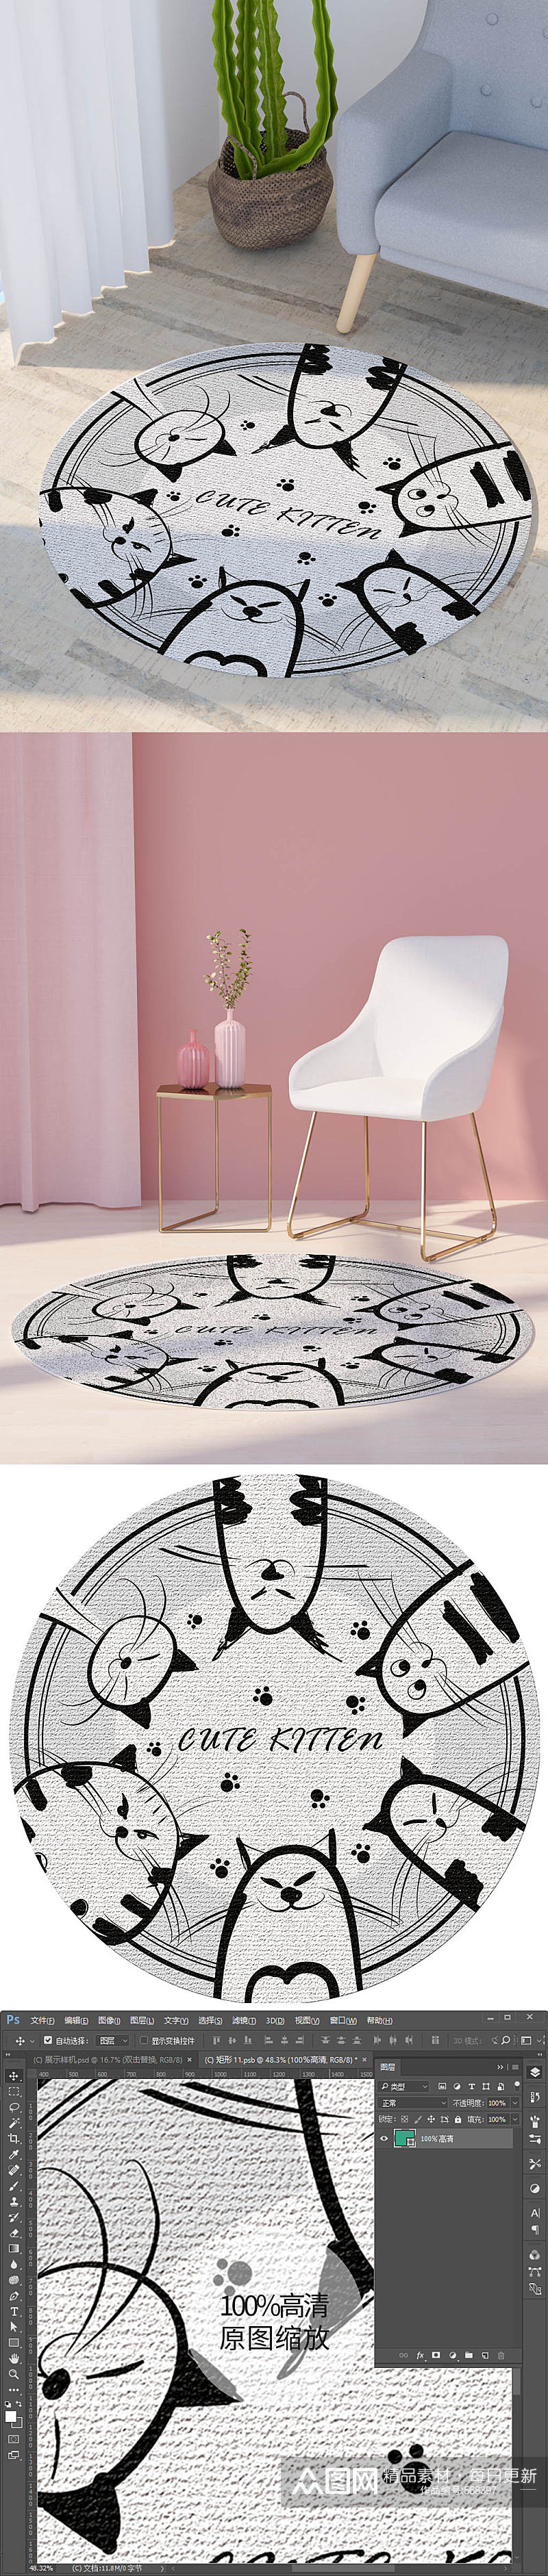 卡通黑白线描小动物圆形地毯印花花纹图素材